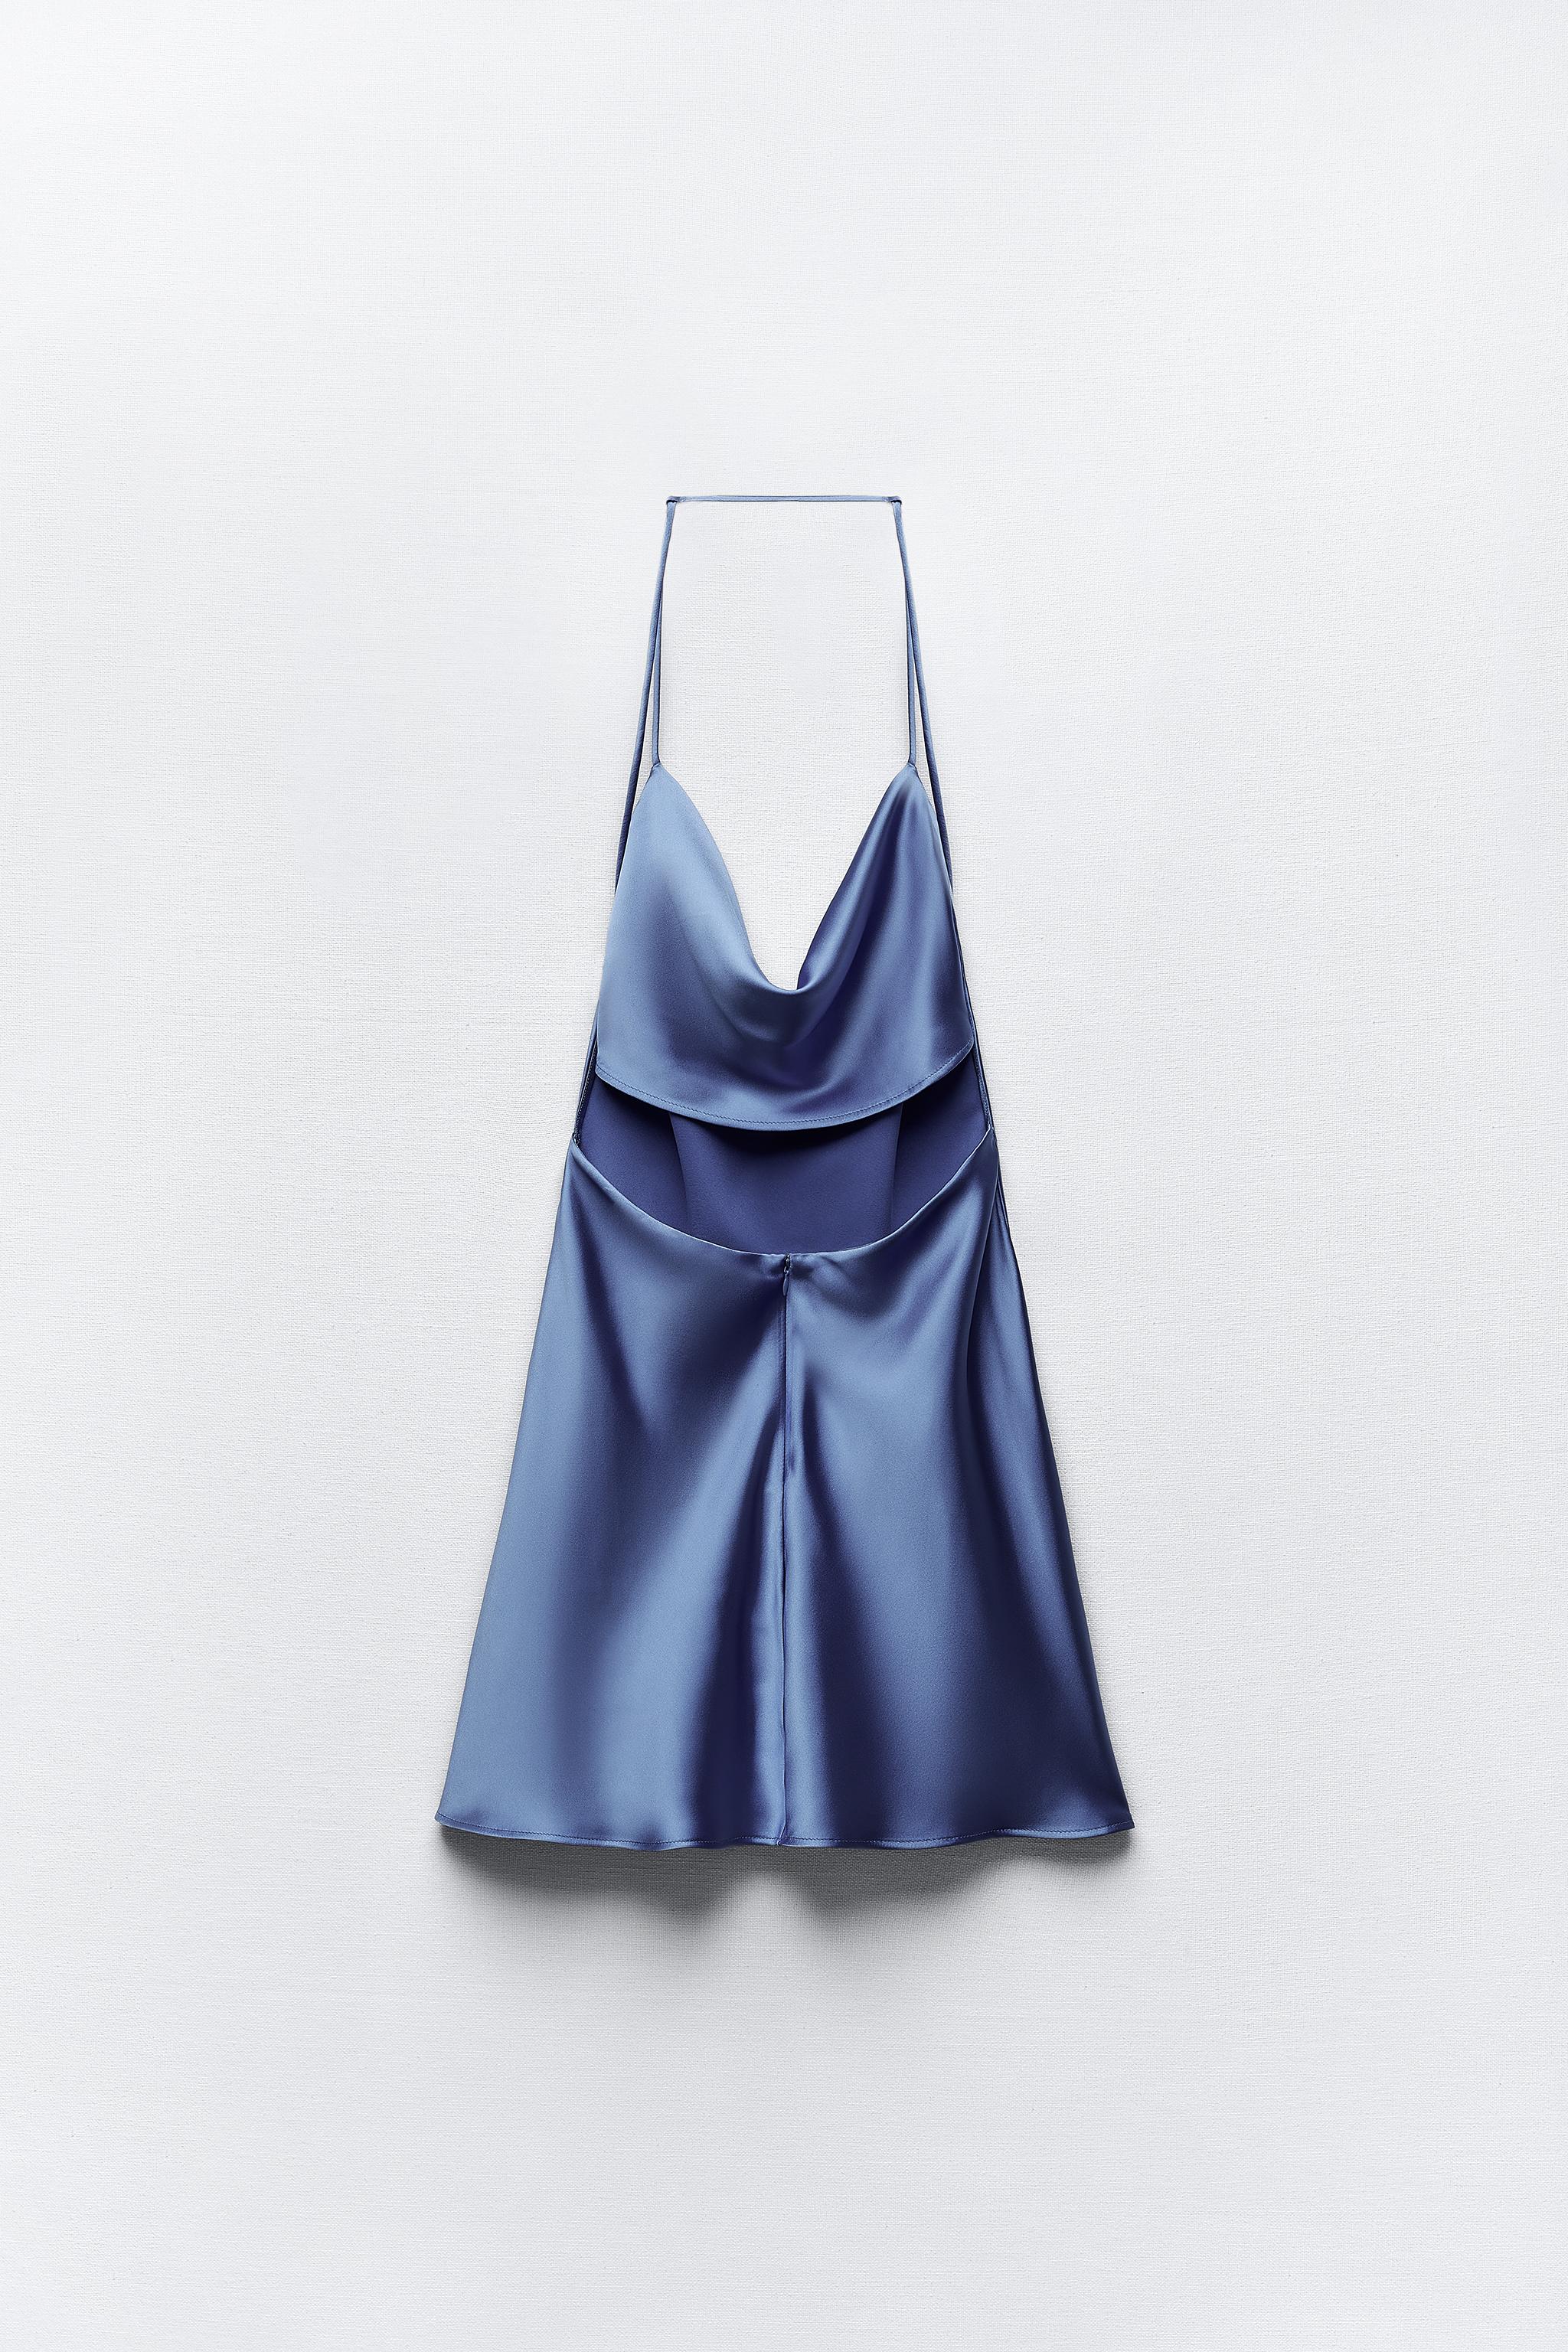 Zara Satin Cut Out Mini – Rent To Dress NZ